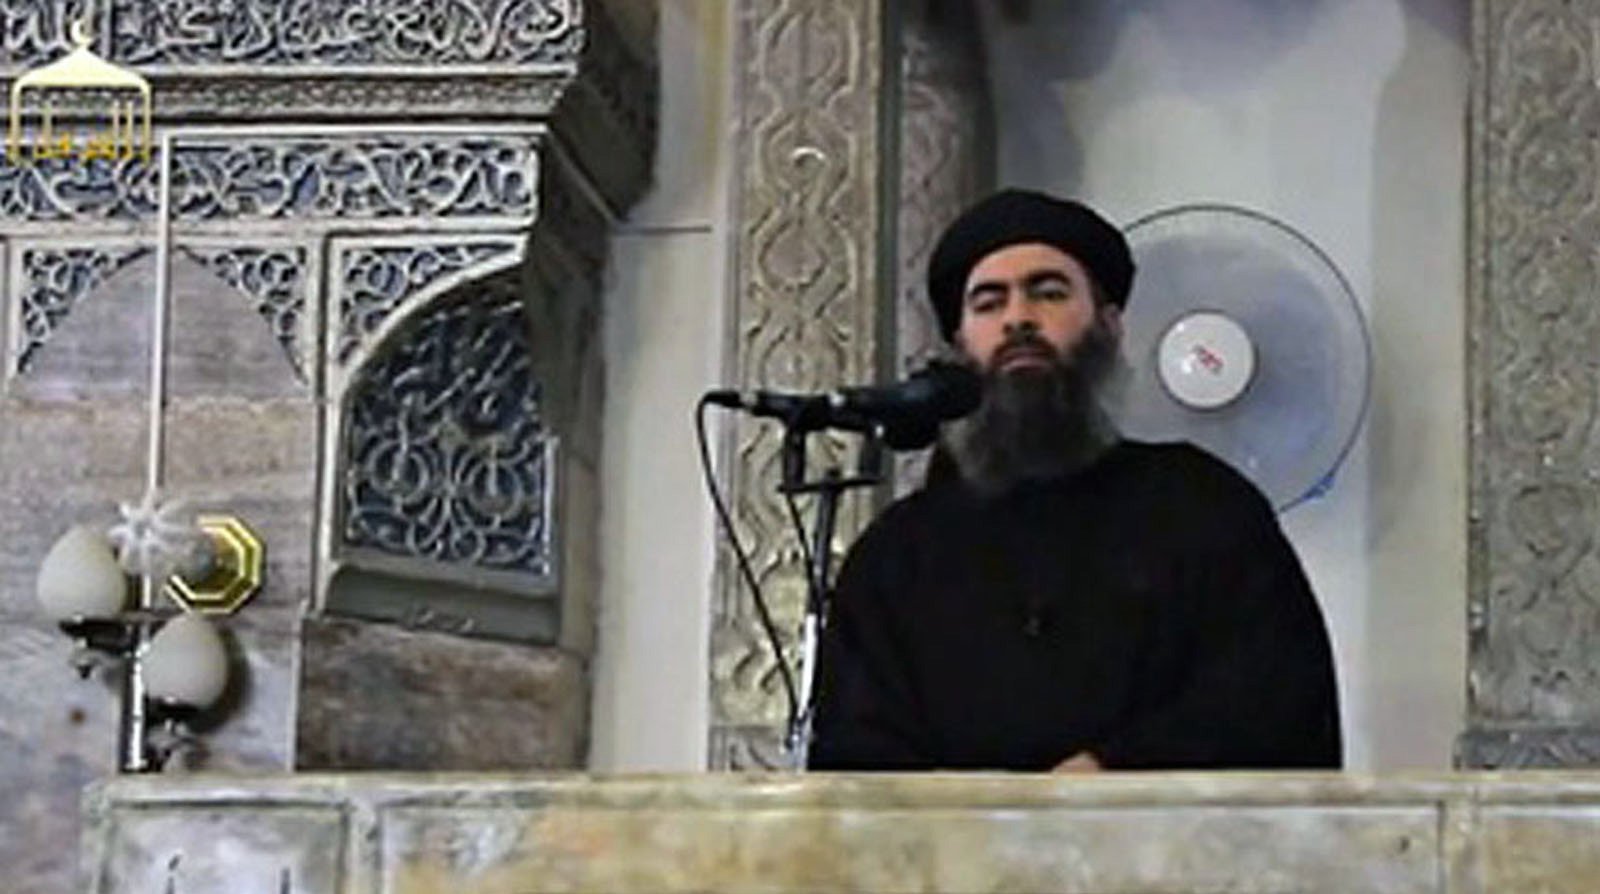 Dailystorm - ИГ опубликовало видео присяги «сургутского террориста» лидеру группировки